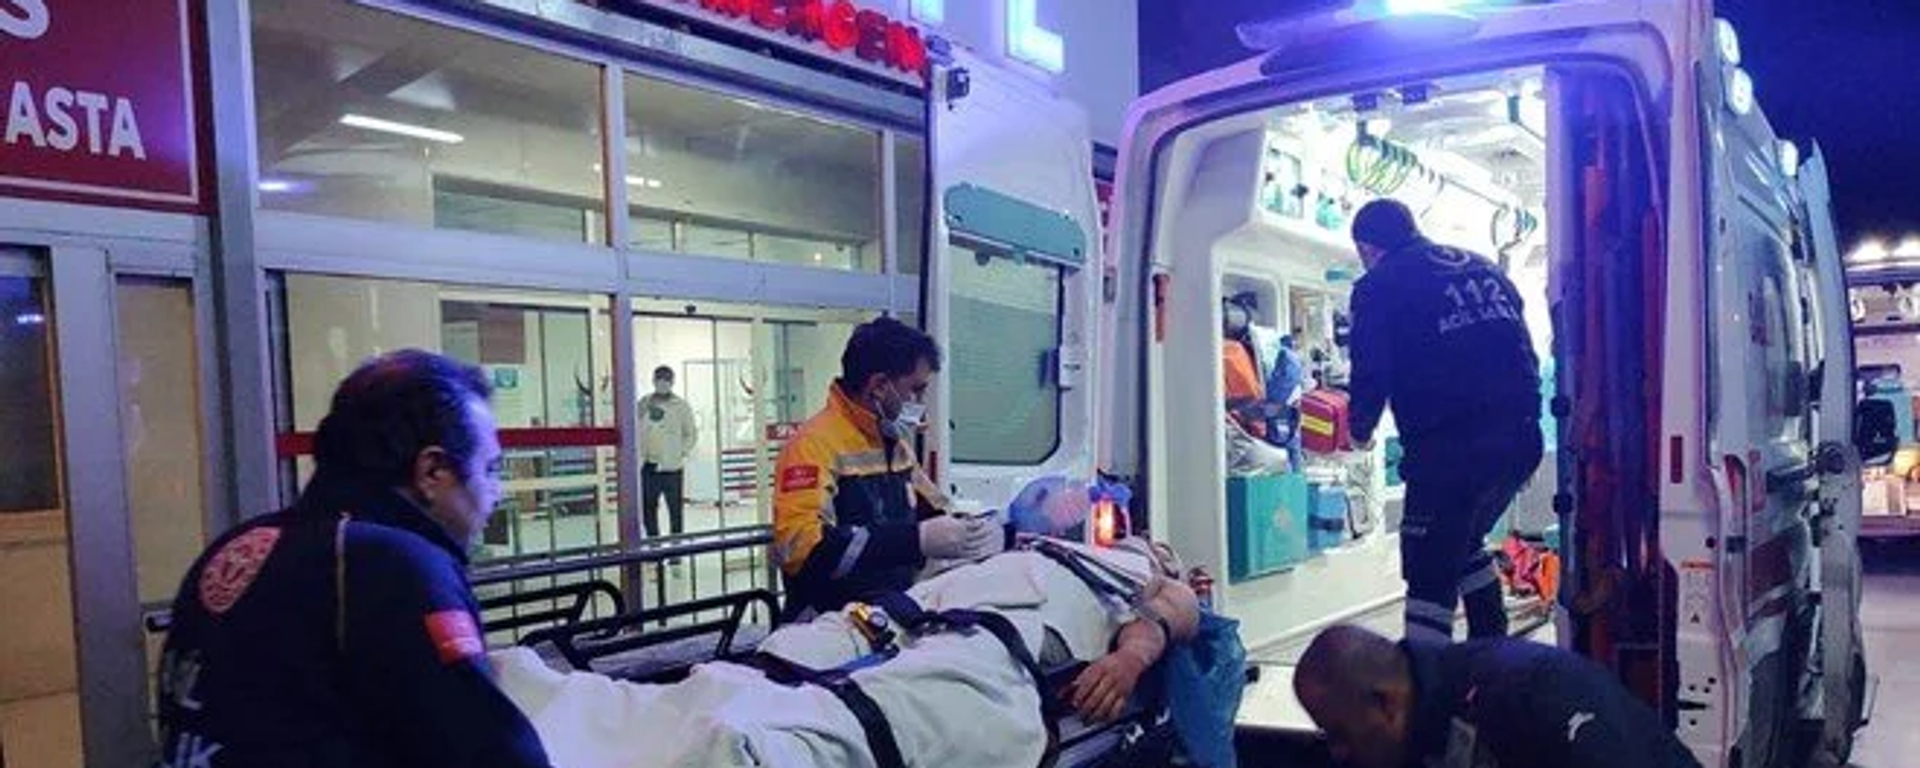 Adana'nın Feke ilçesinde, 3.7'lik depremin ardından madende oluşan göçüğün altında kalan bir kişi yaralandı. - Sputnik Türkiye, 1920, 24.02.2023